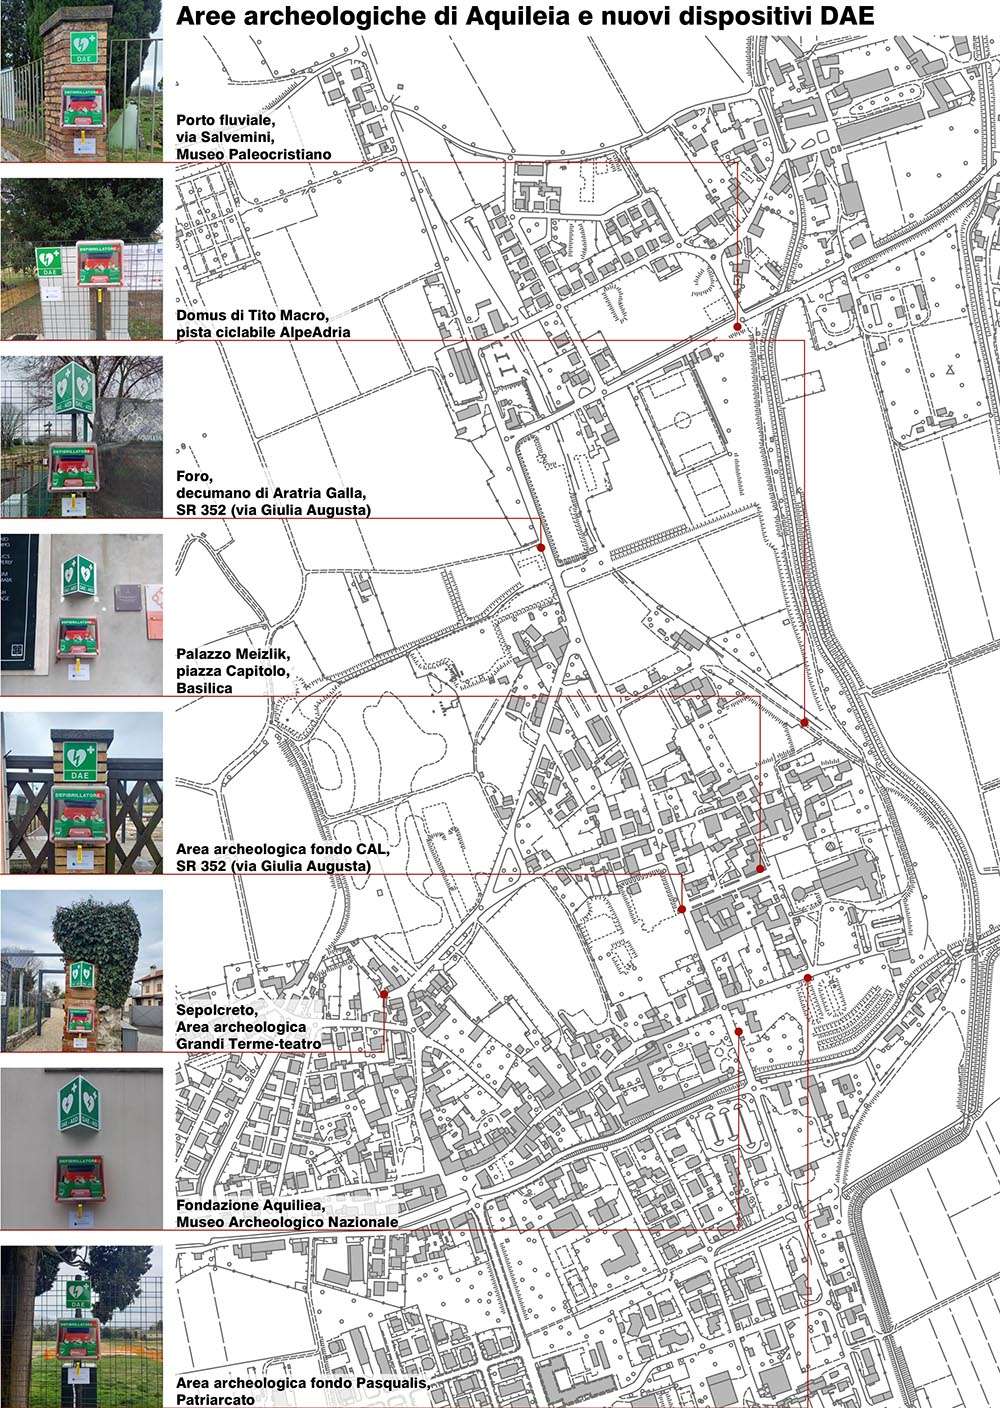 La mappa dei defibrillatori ad Aquileia